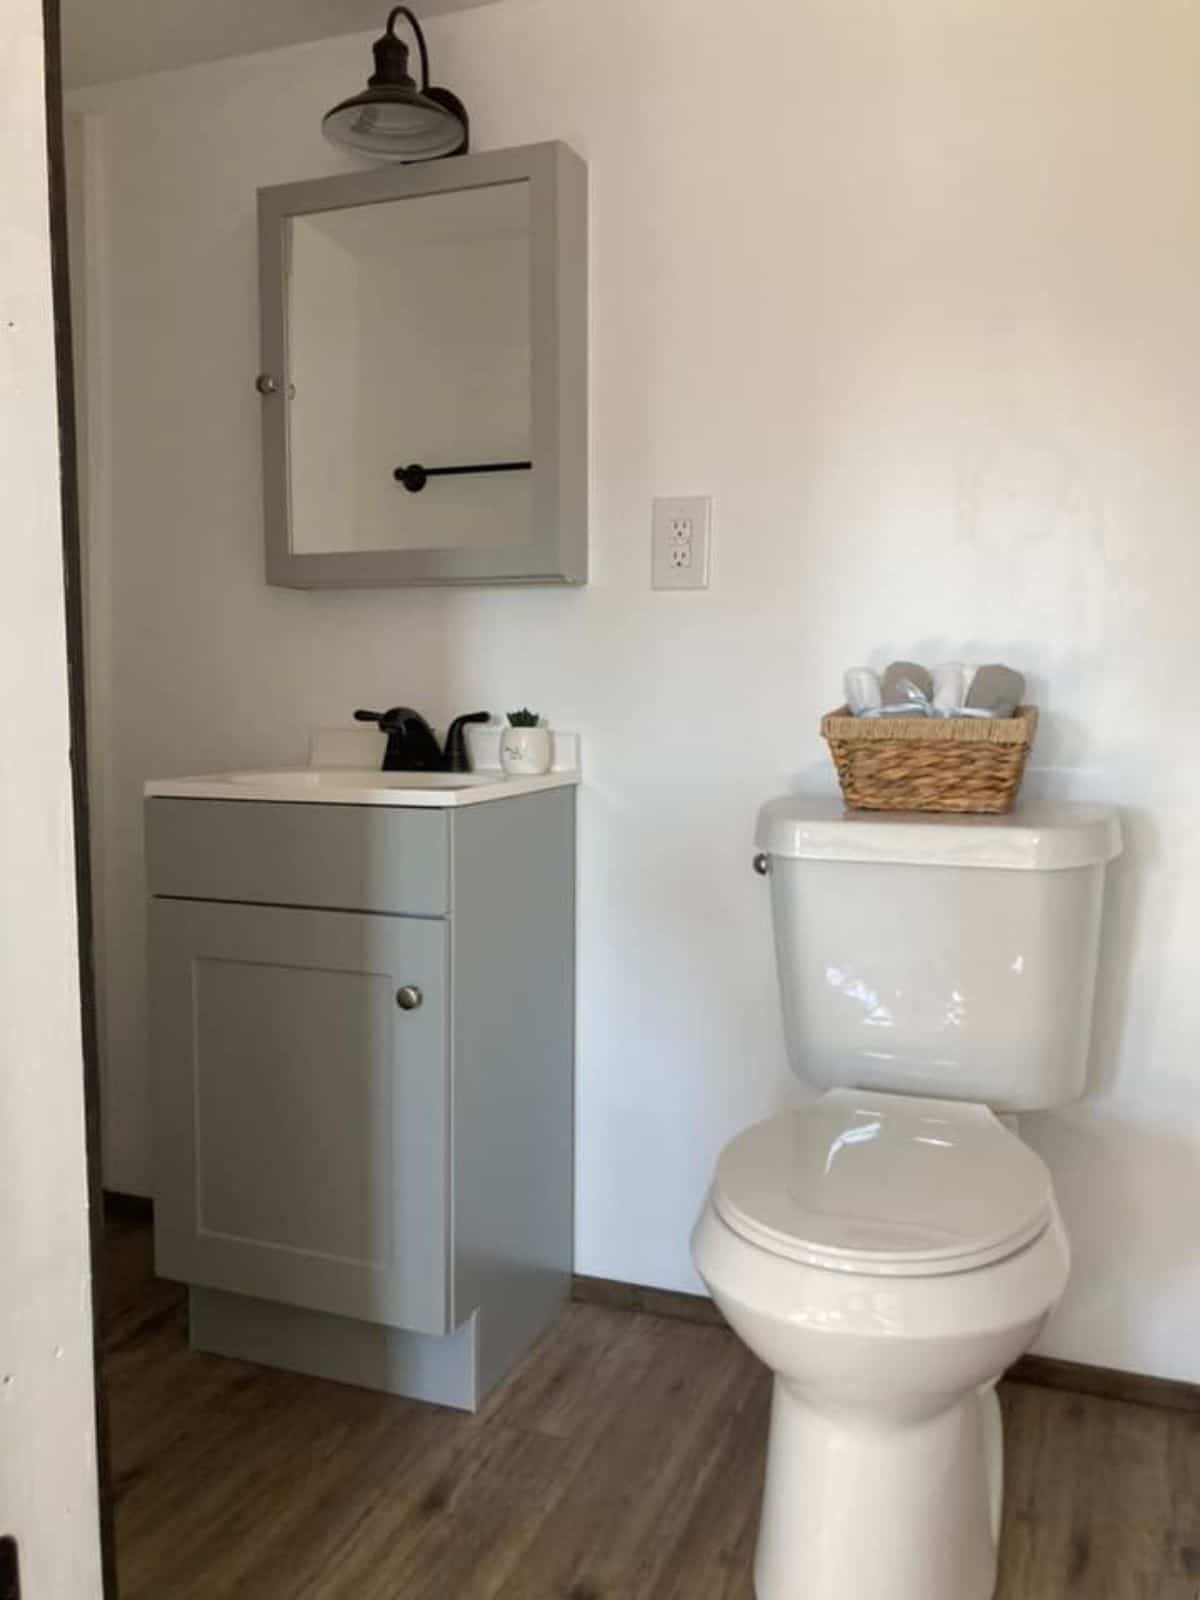 Toilet and sink plus storage for toiletries